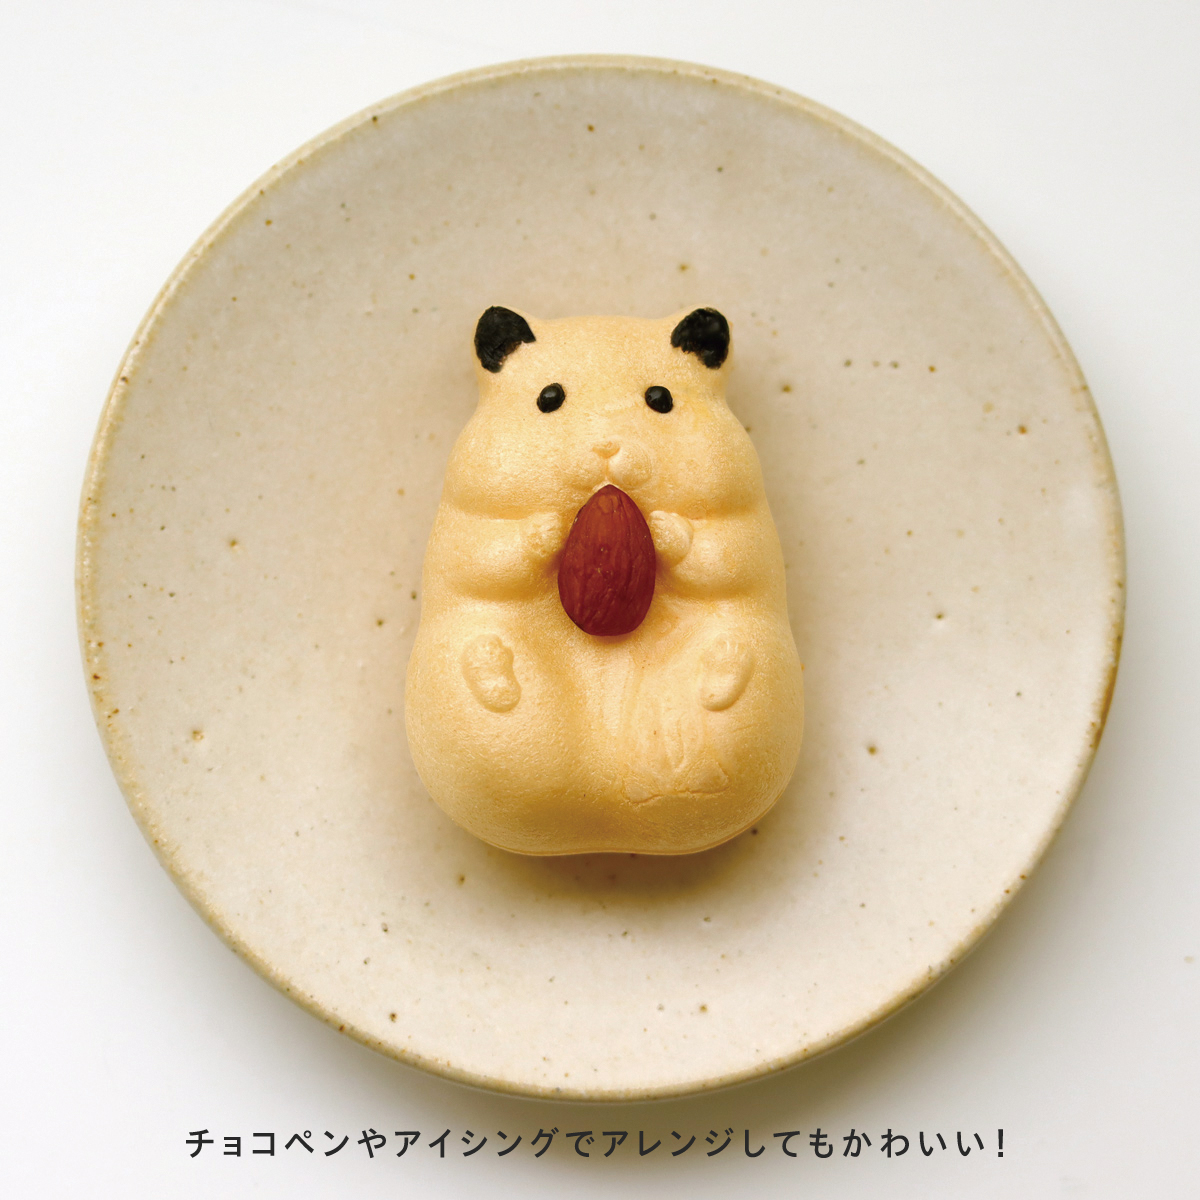 とんでもなく可愛い和菓子が誕生!京都・青木光悦堂から「ハムスターモナカ 」が発売!